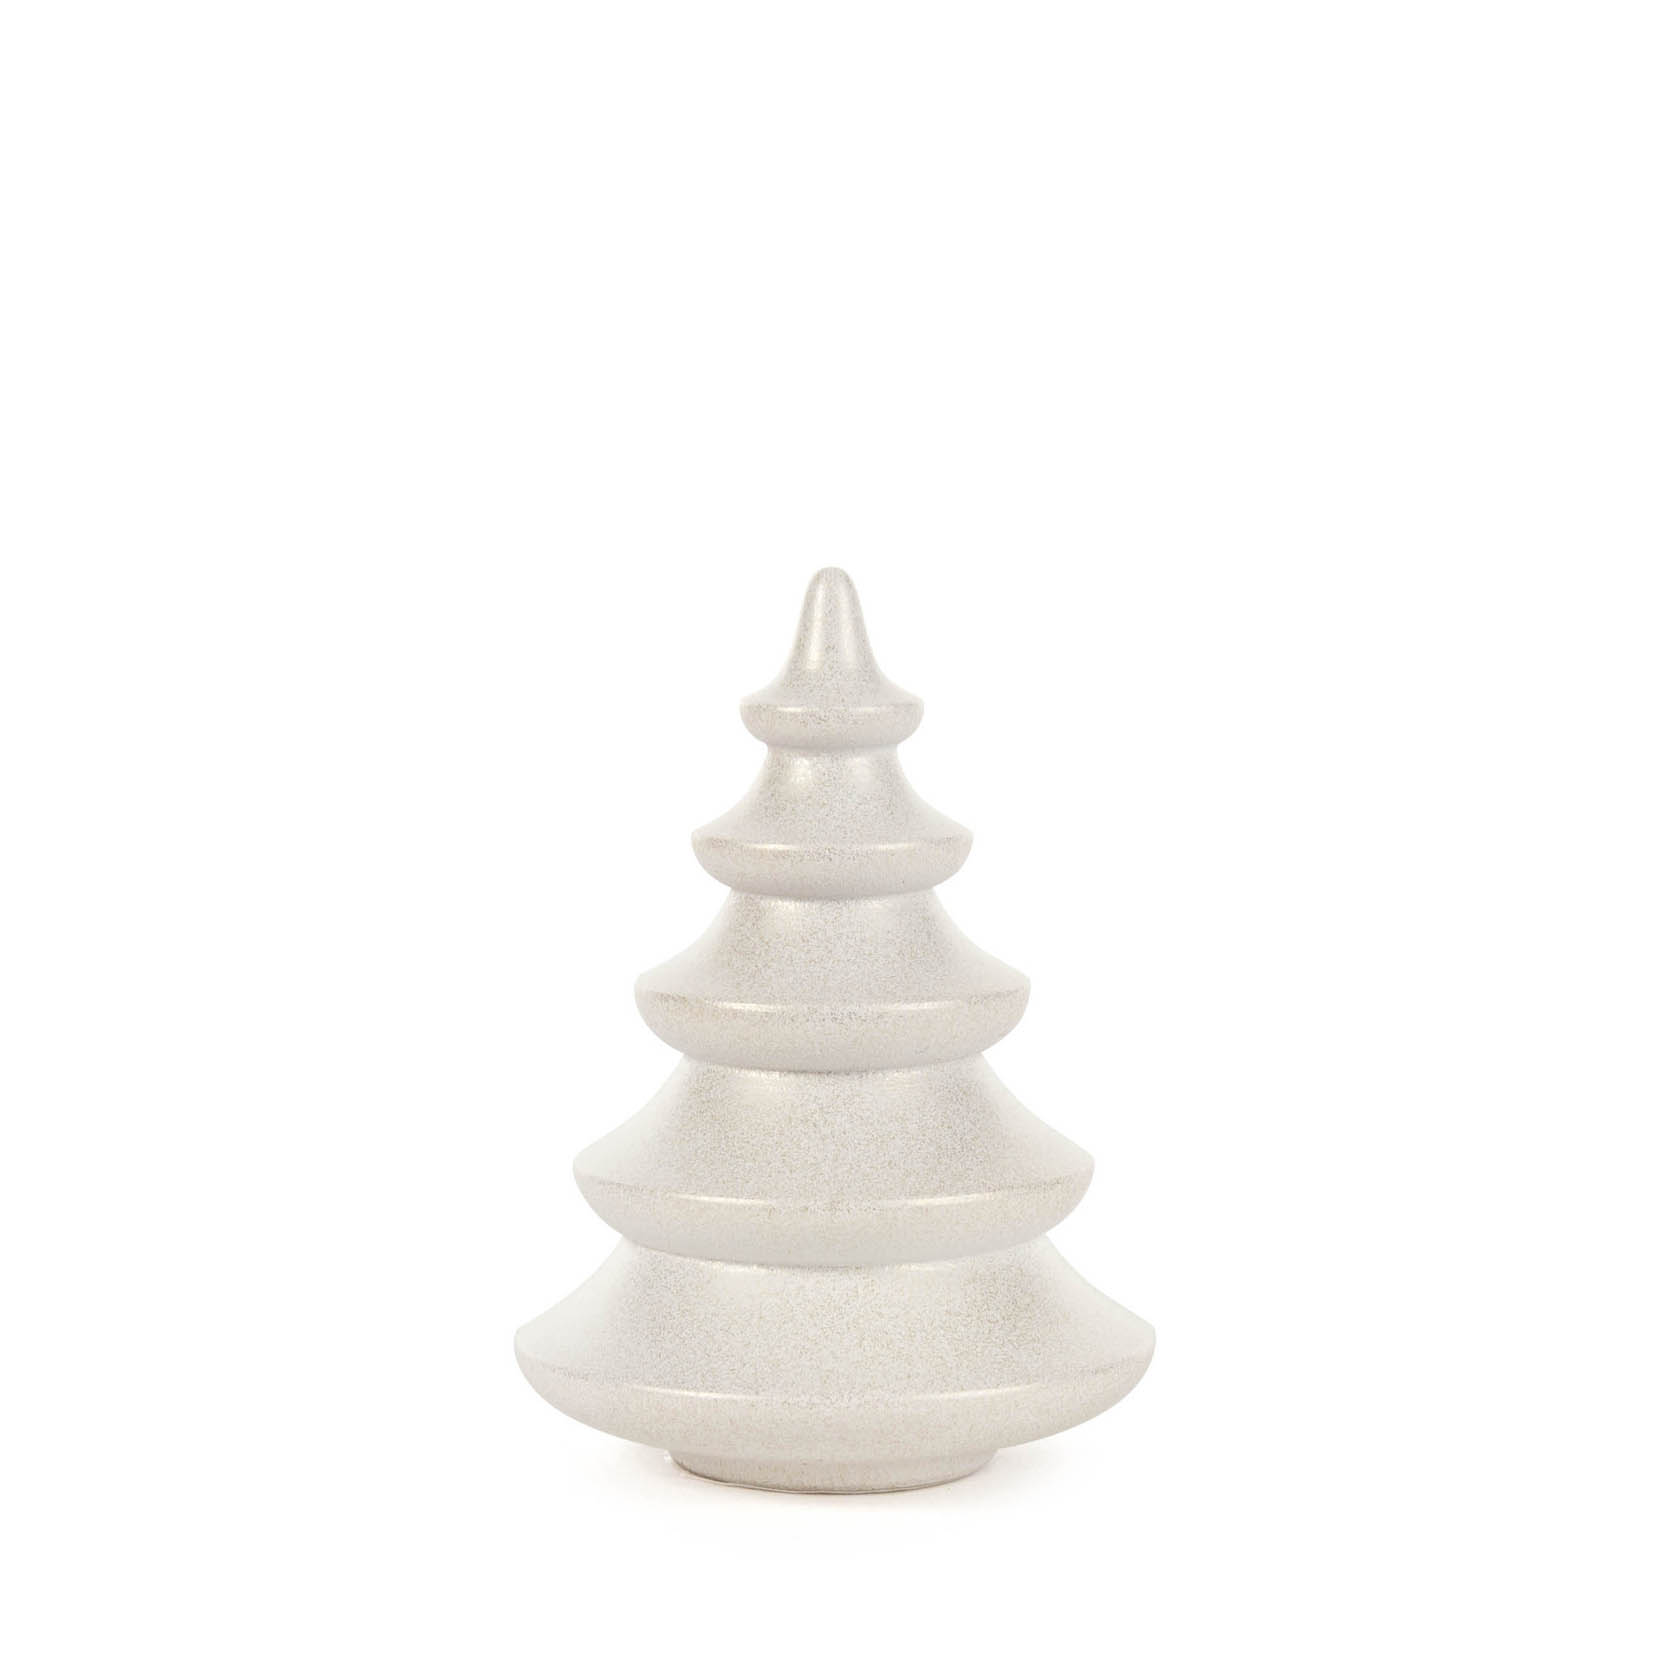 Baum weiß/gold 6cm, Bestückung für Vario-Leuchter im Dregeno Online Shop günstig kaufen